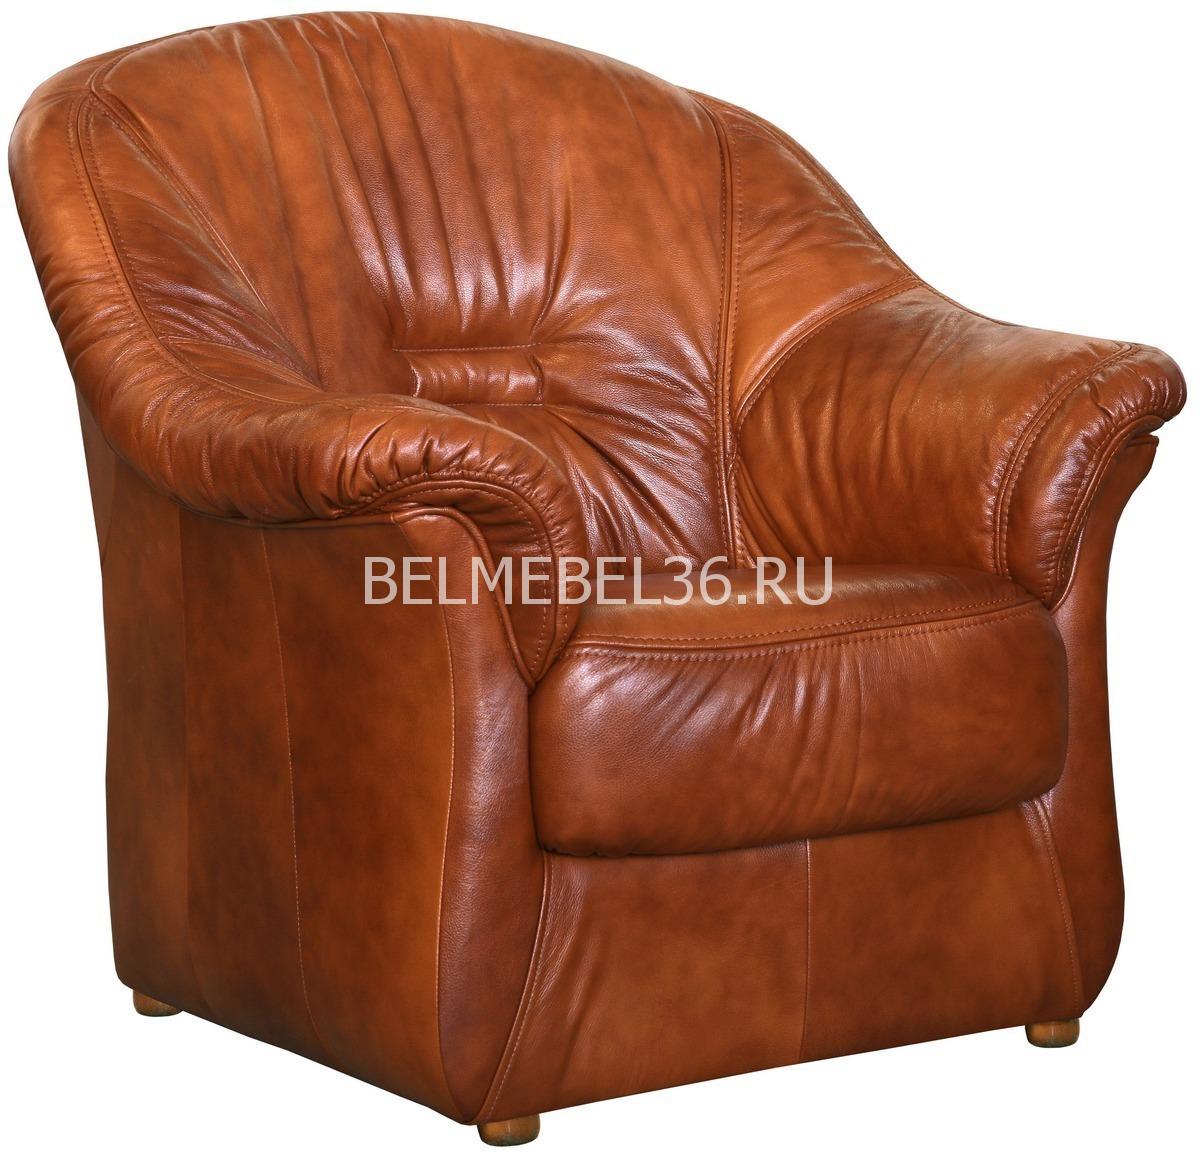 Кресло Омега (12) П-Д057 | Белорусская мебель в Воронеже